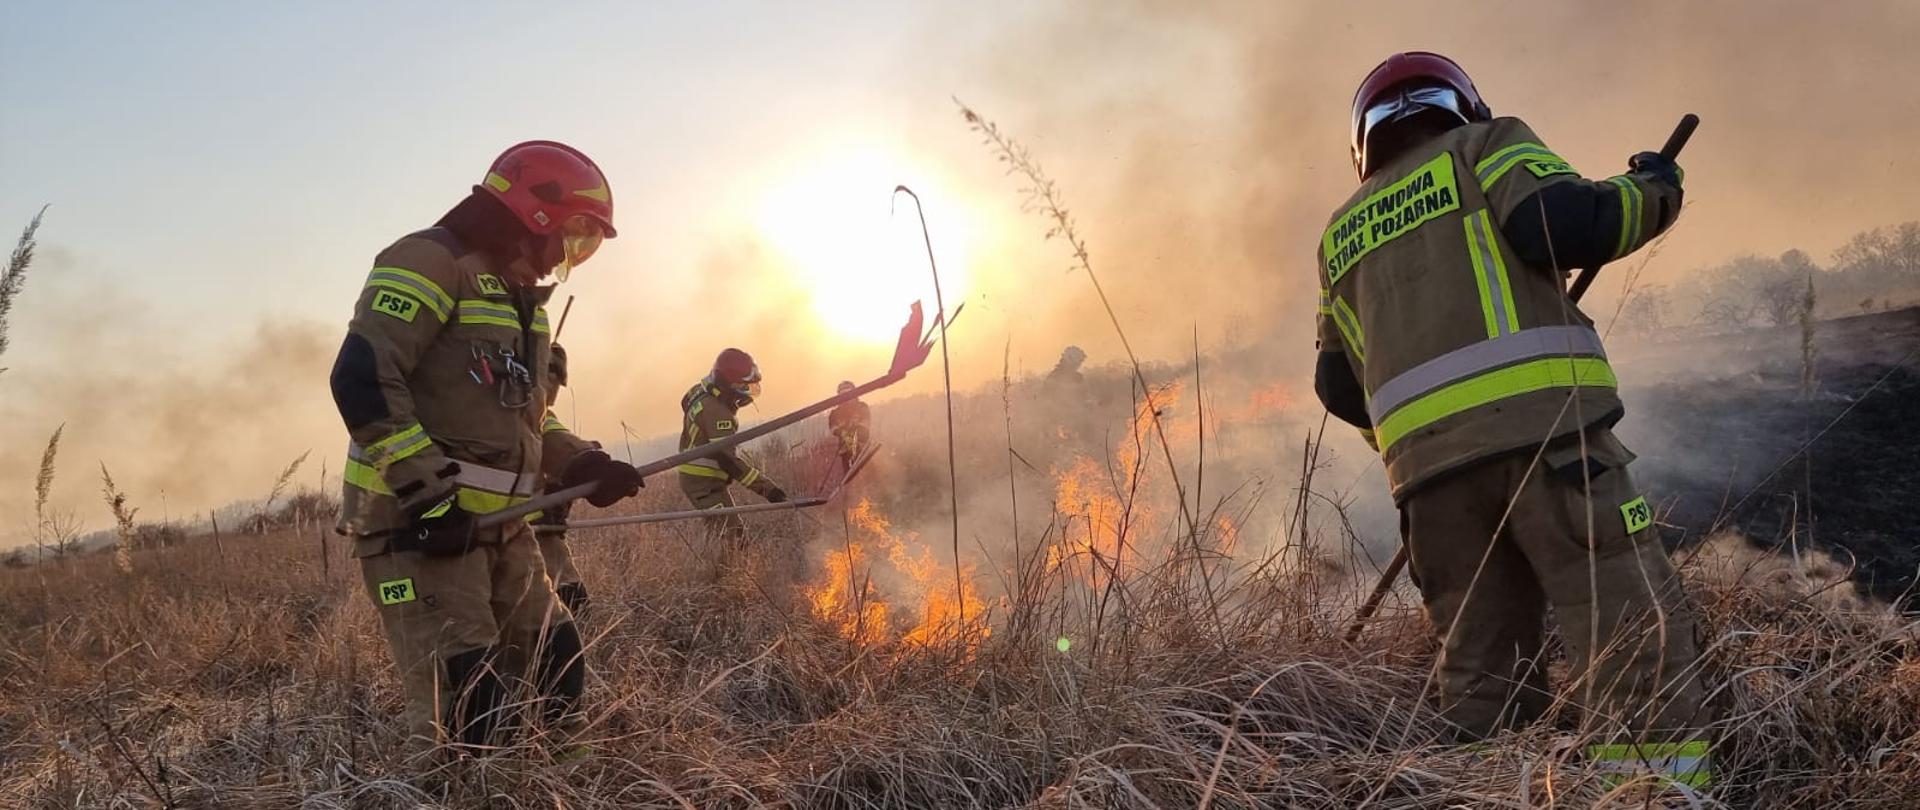 Strażacy stojący w wysokiej trawie i gaszący pożar traw za pomocą tłumic. Po prawej stronie widoczne wypalona powierzchnia.